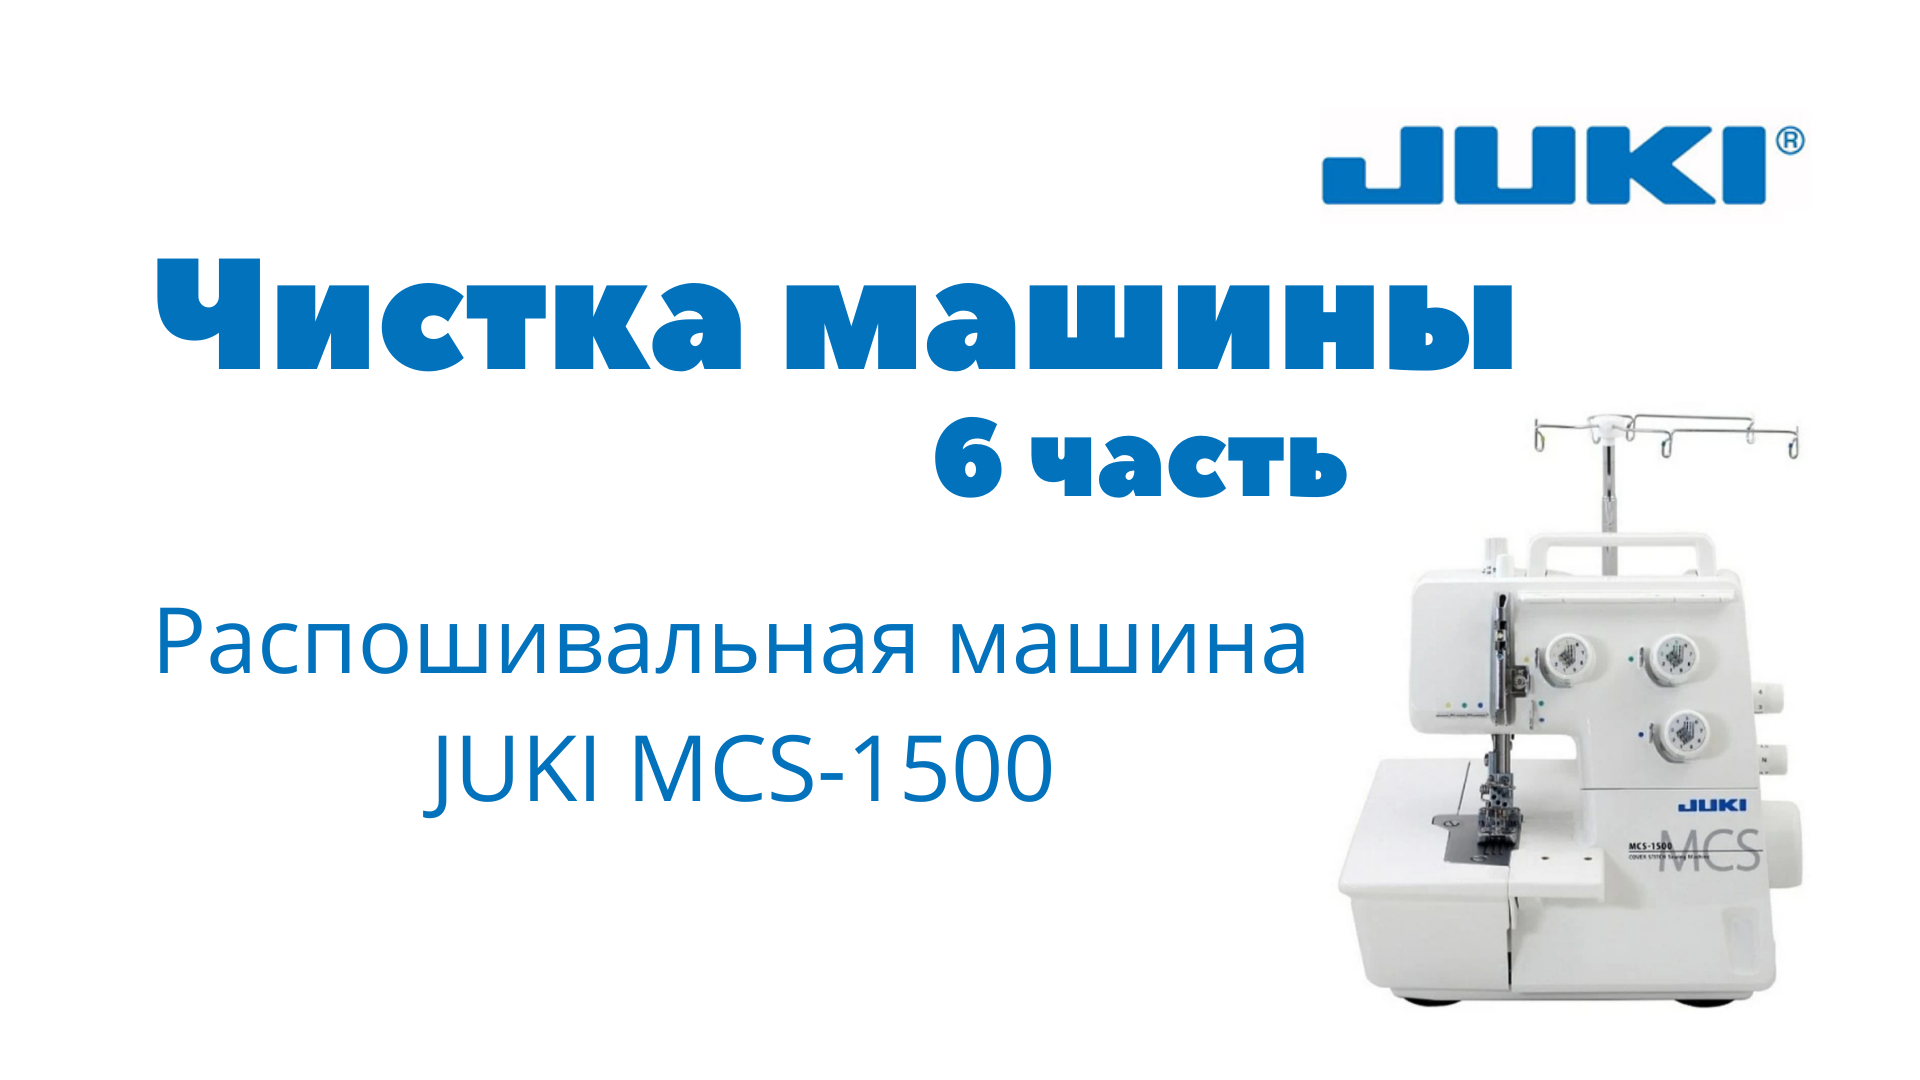 Распошивальная машина Juki MCS-1500. Лампа распошивальная машина Juki MCS-1500. Комплектация швейной машинки Juki TL 2010. Заправка распошивальной машины Juki 1500. Швейная машинка жук